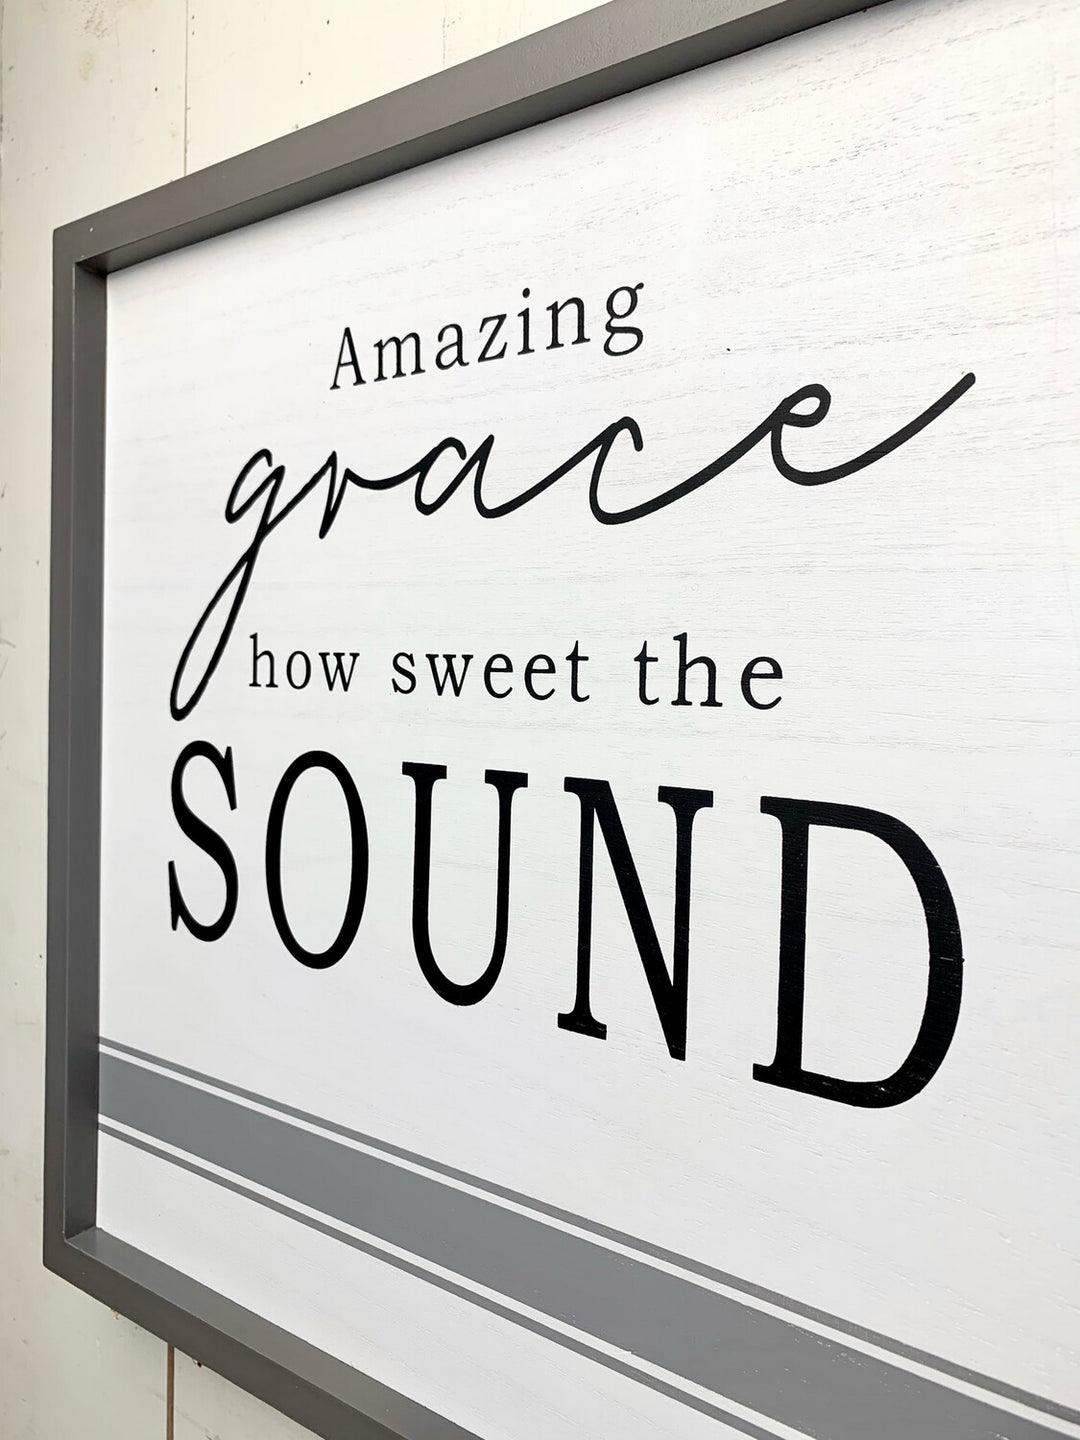 “Amazing Grace How Sweet The Sound” Signage